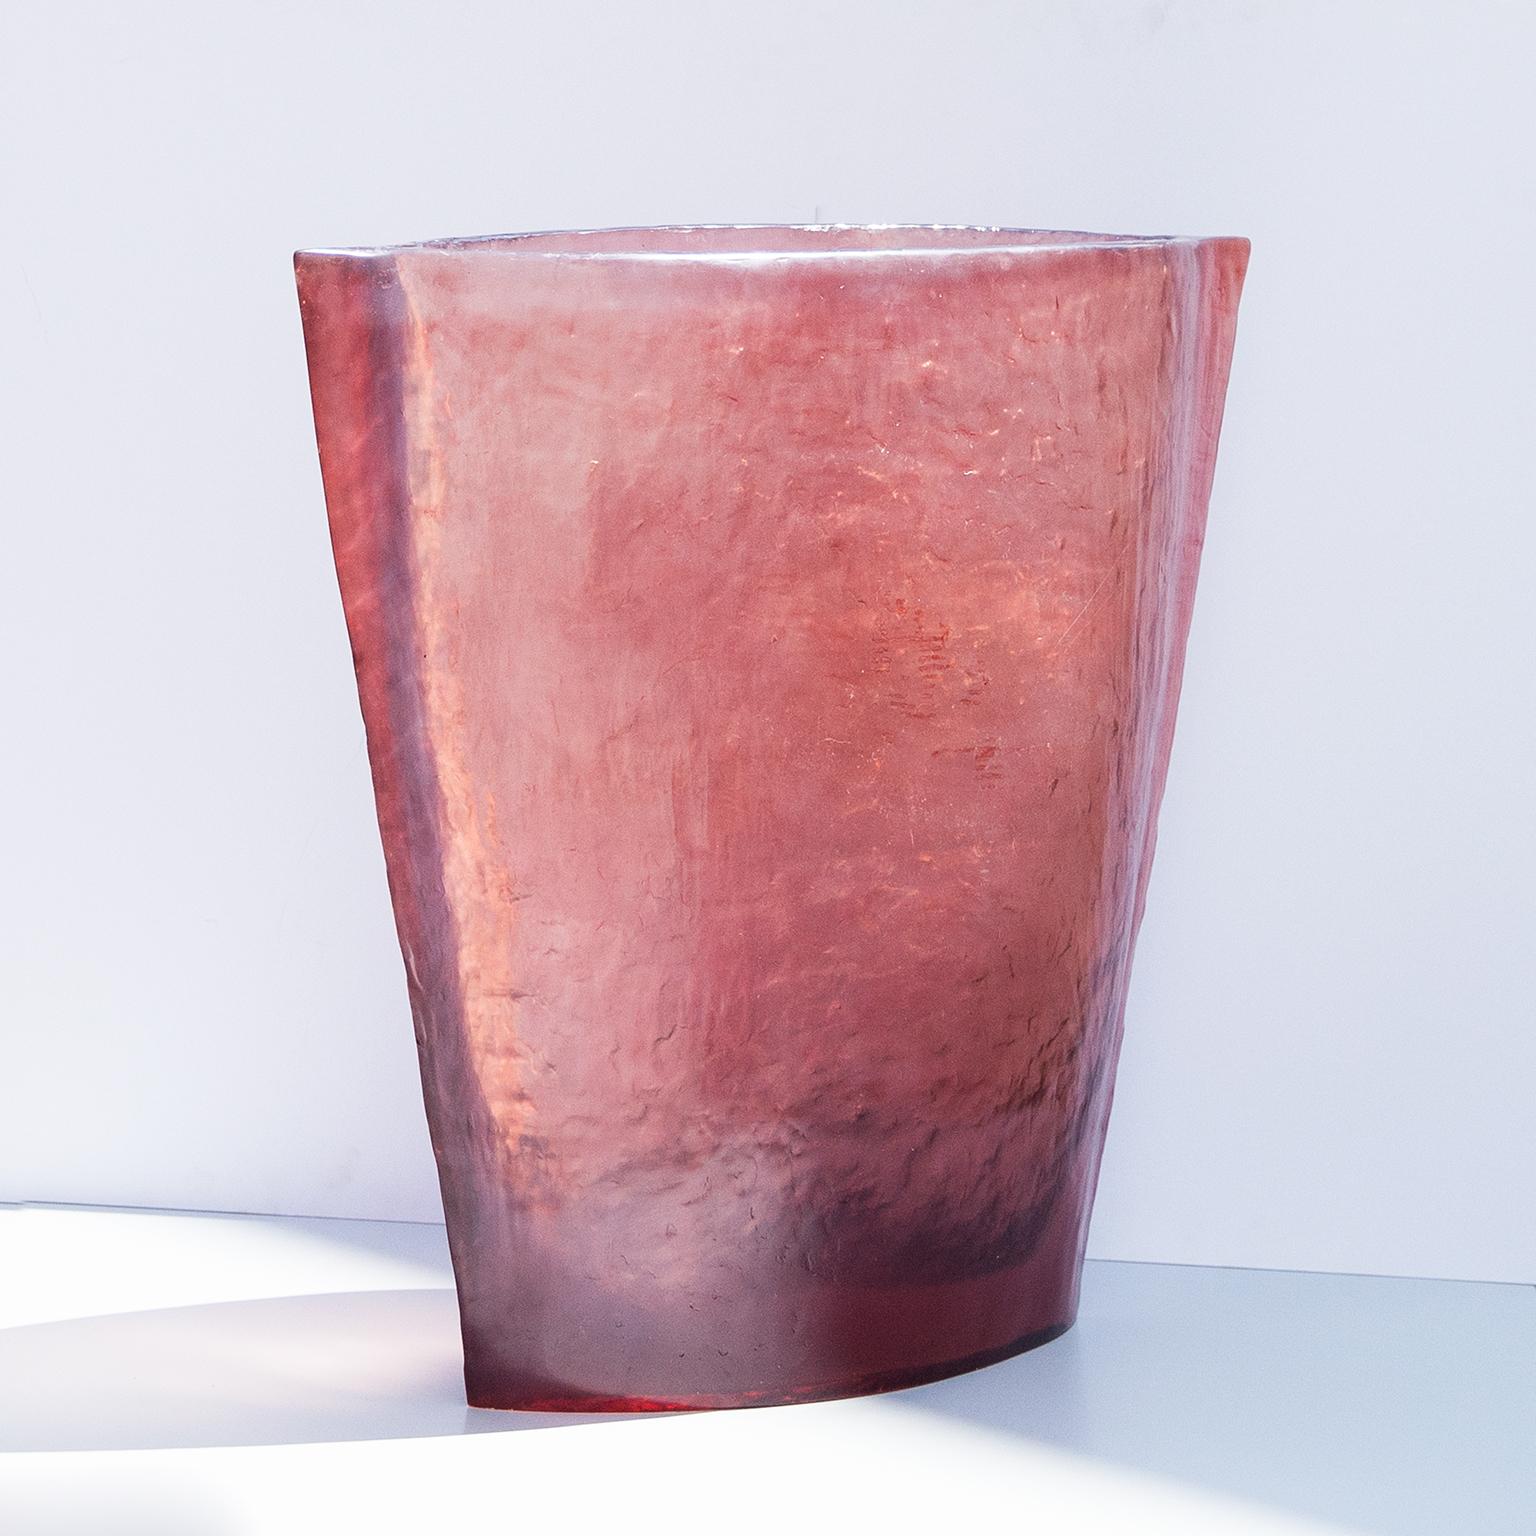 Außergewöhnliche Vase aus Acrylharz in lila Farbe mit rohem Finish für ein dekoratives Statement in Ihrer Eingangshalle oder draußen auf Ihrer Terrasse.